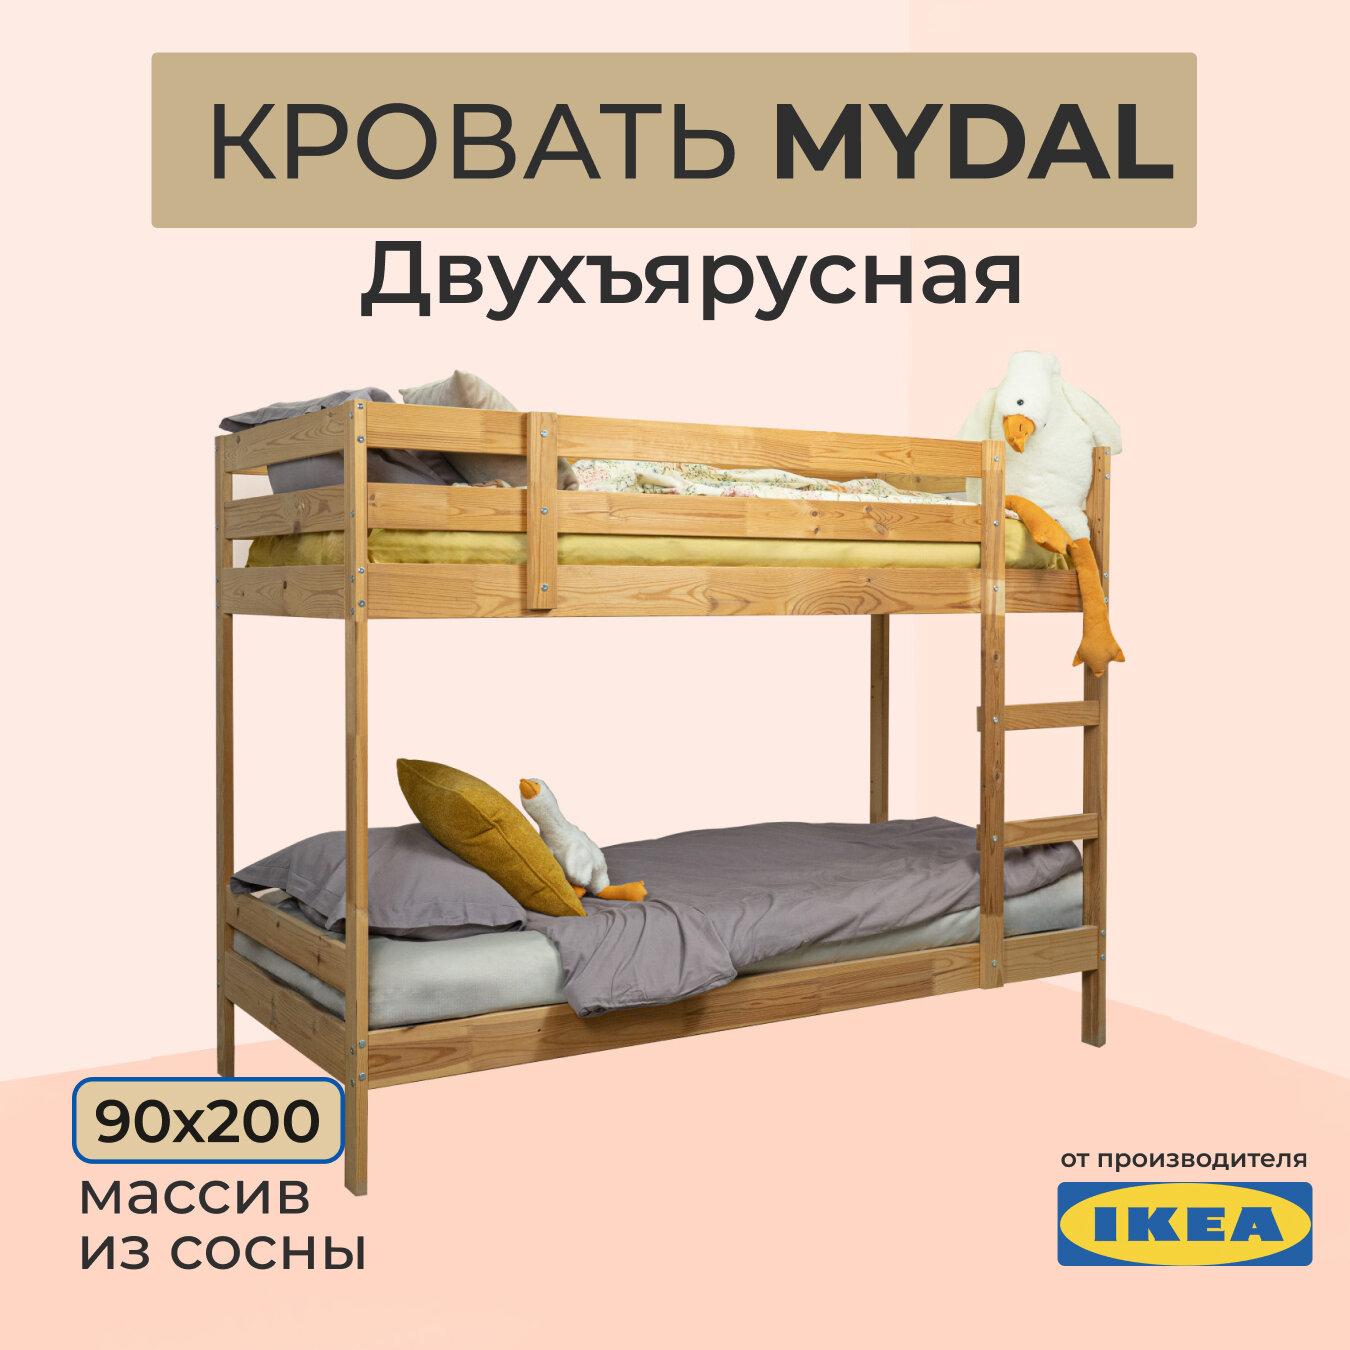 Двухъярусная кровать икеа мидал, размер (ДхШ): 206х97 см, спальное место (ДхШ): 200х90 см, цвет: сосна